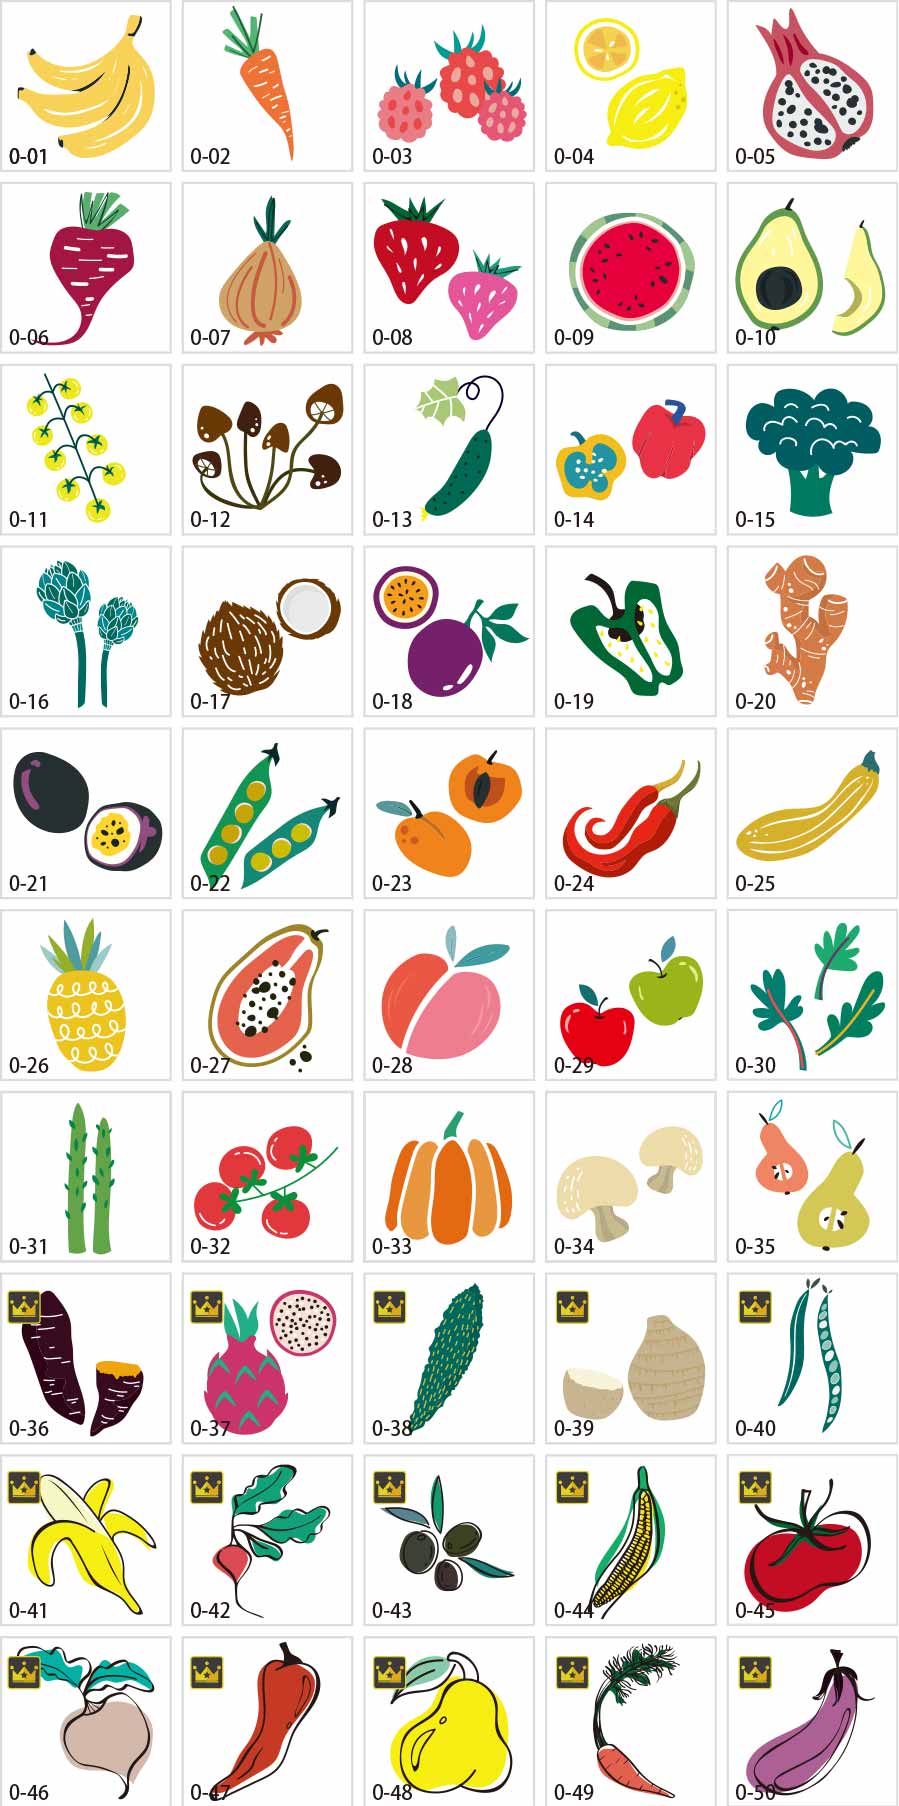 ภาพประกอบของผักและผลไม้ที่ทันสมัย